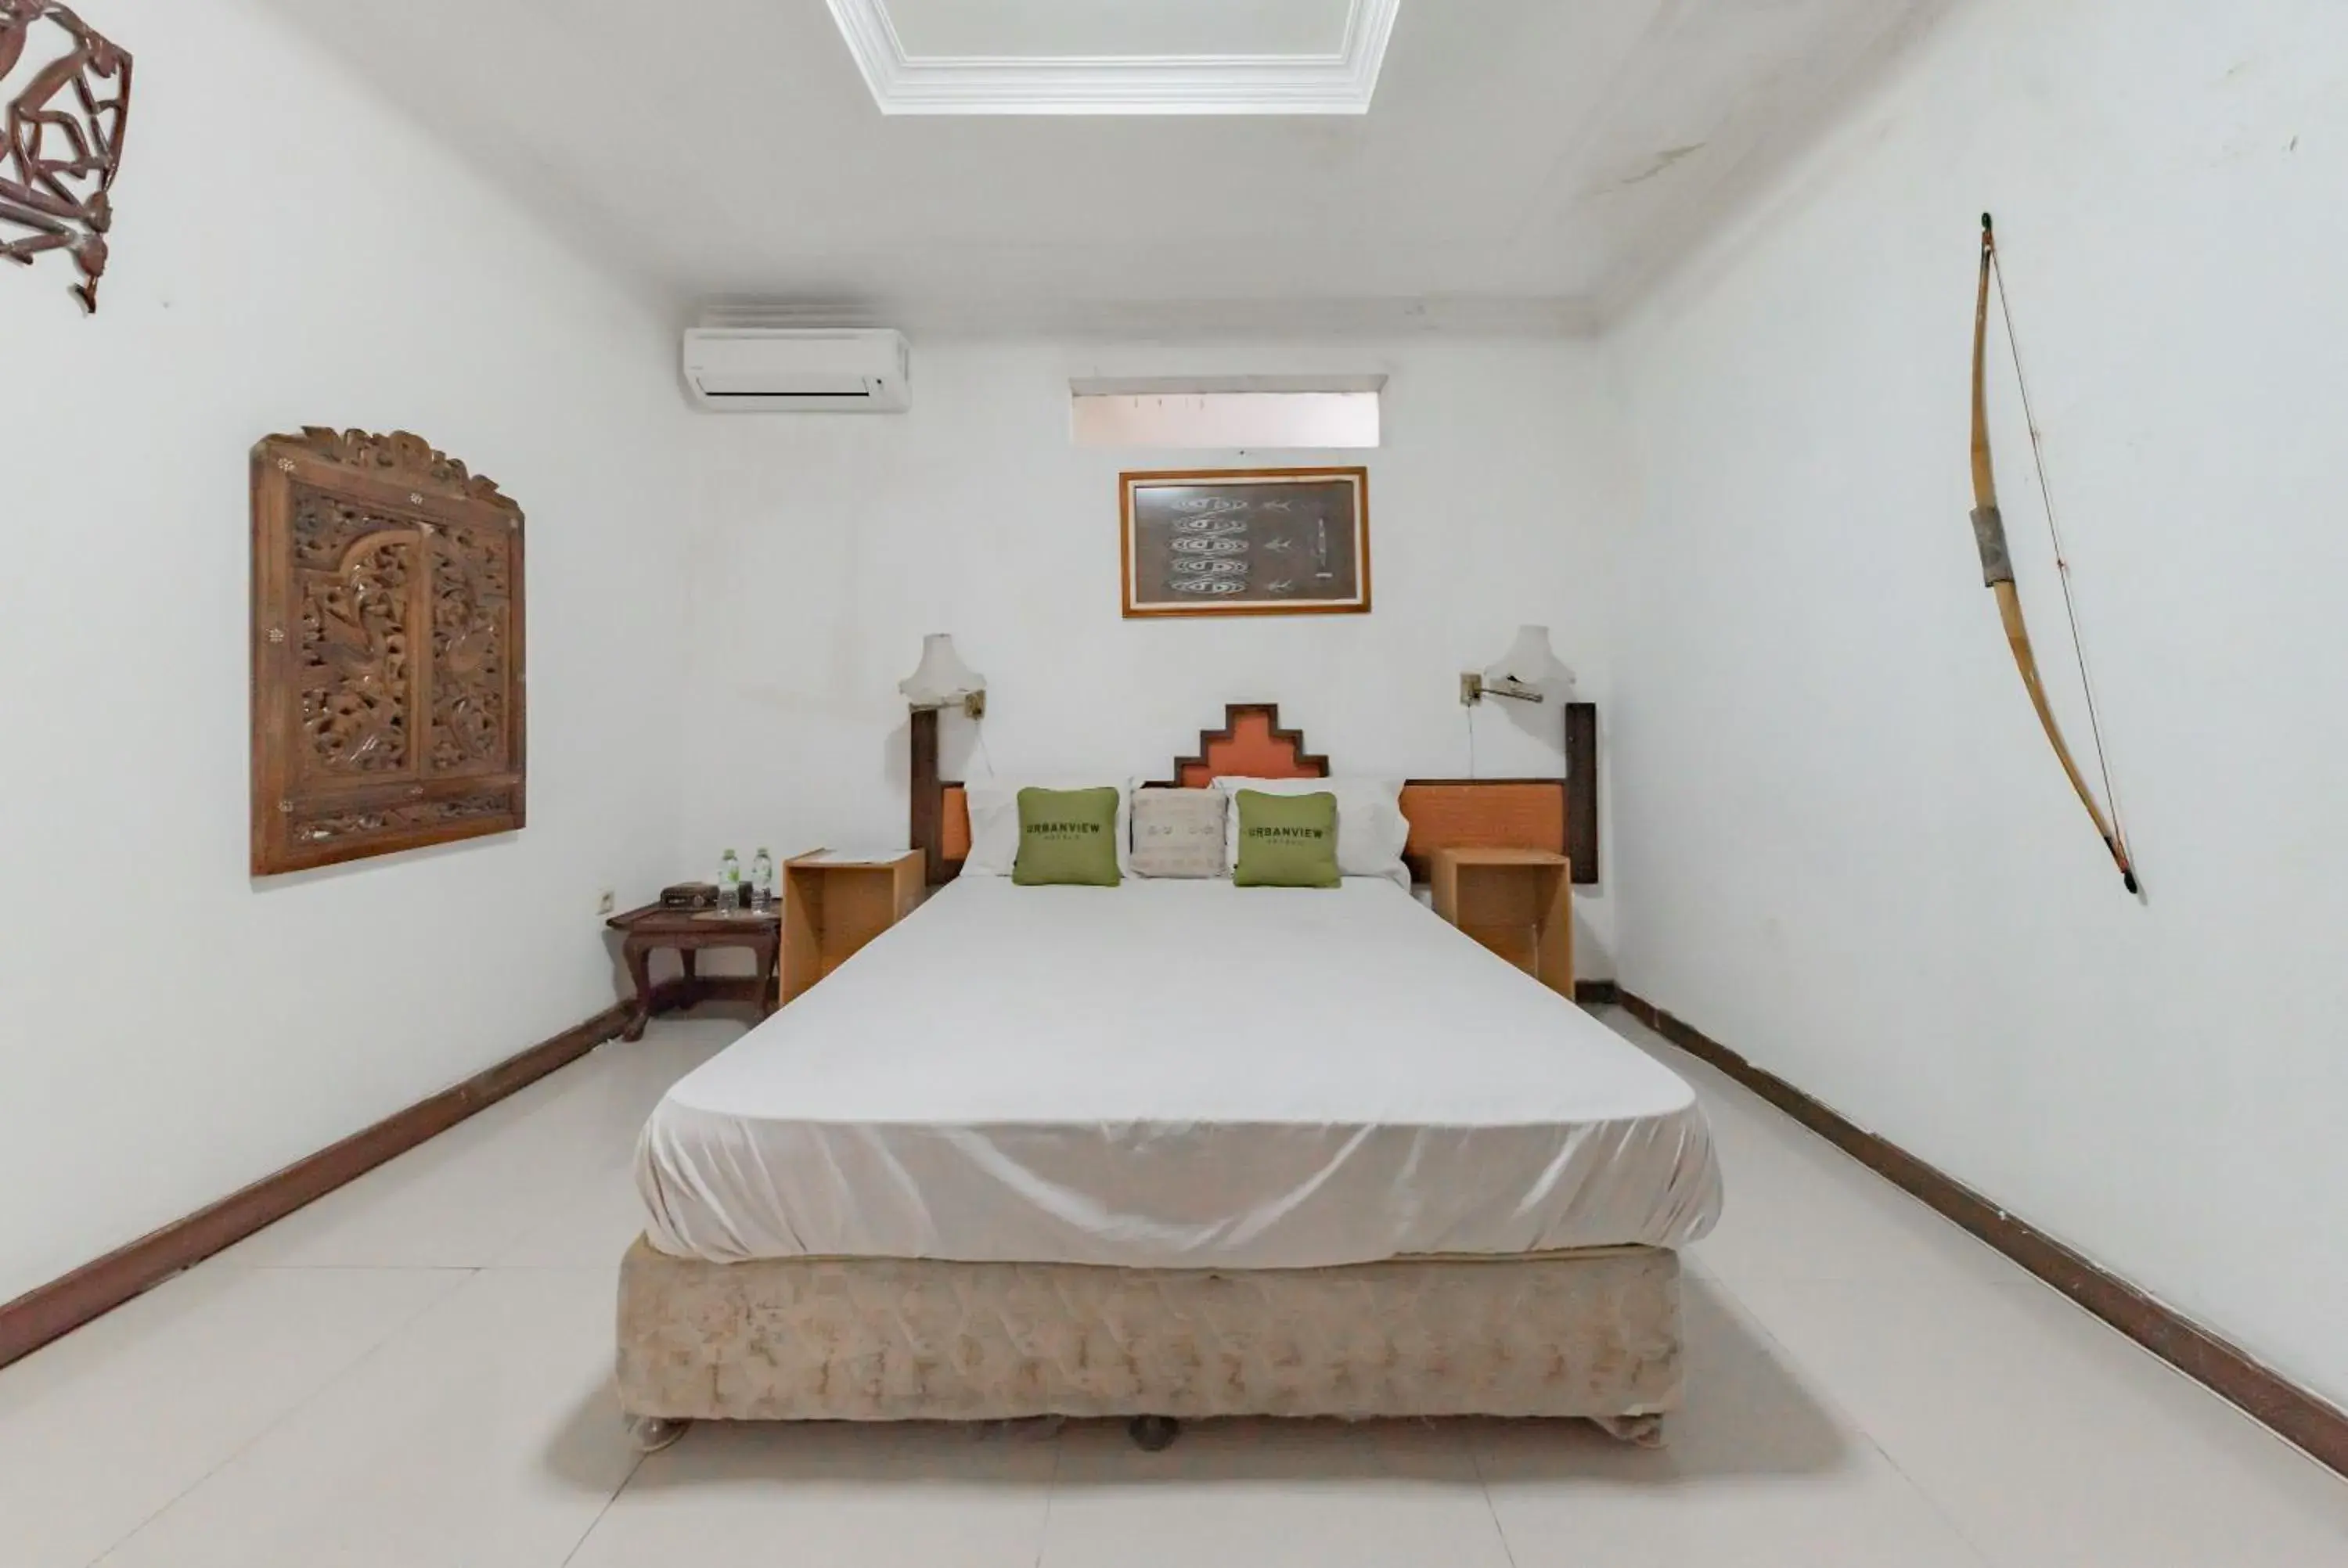 Bedroom, Bed in Urbanview De Ethnic Hotel Bandung